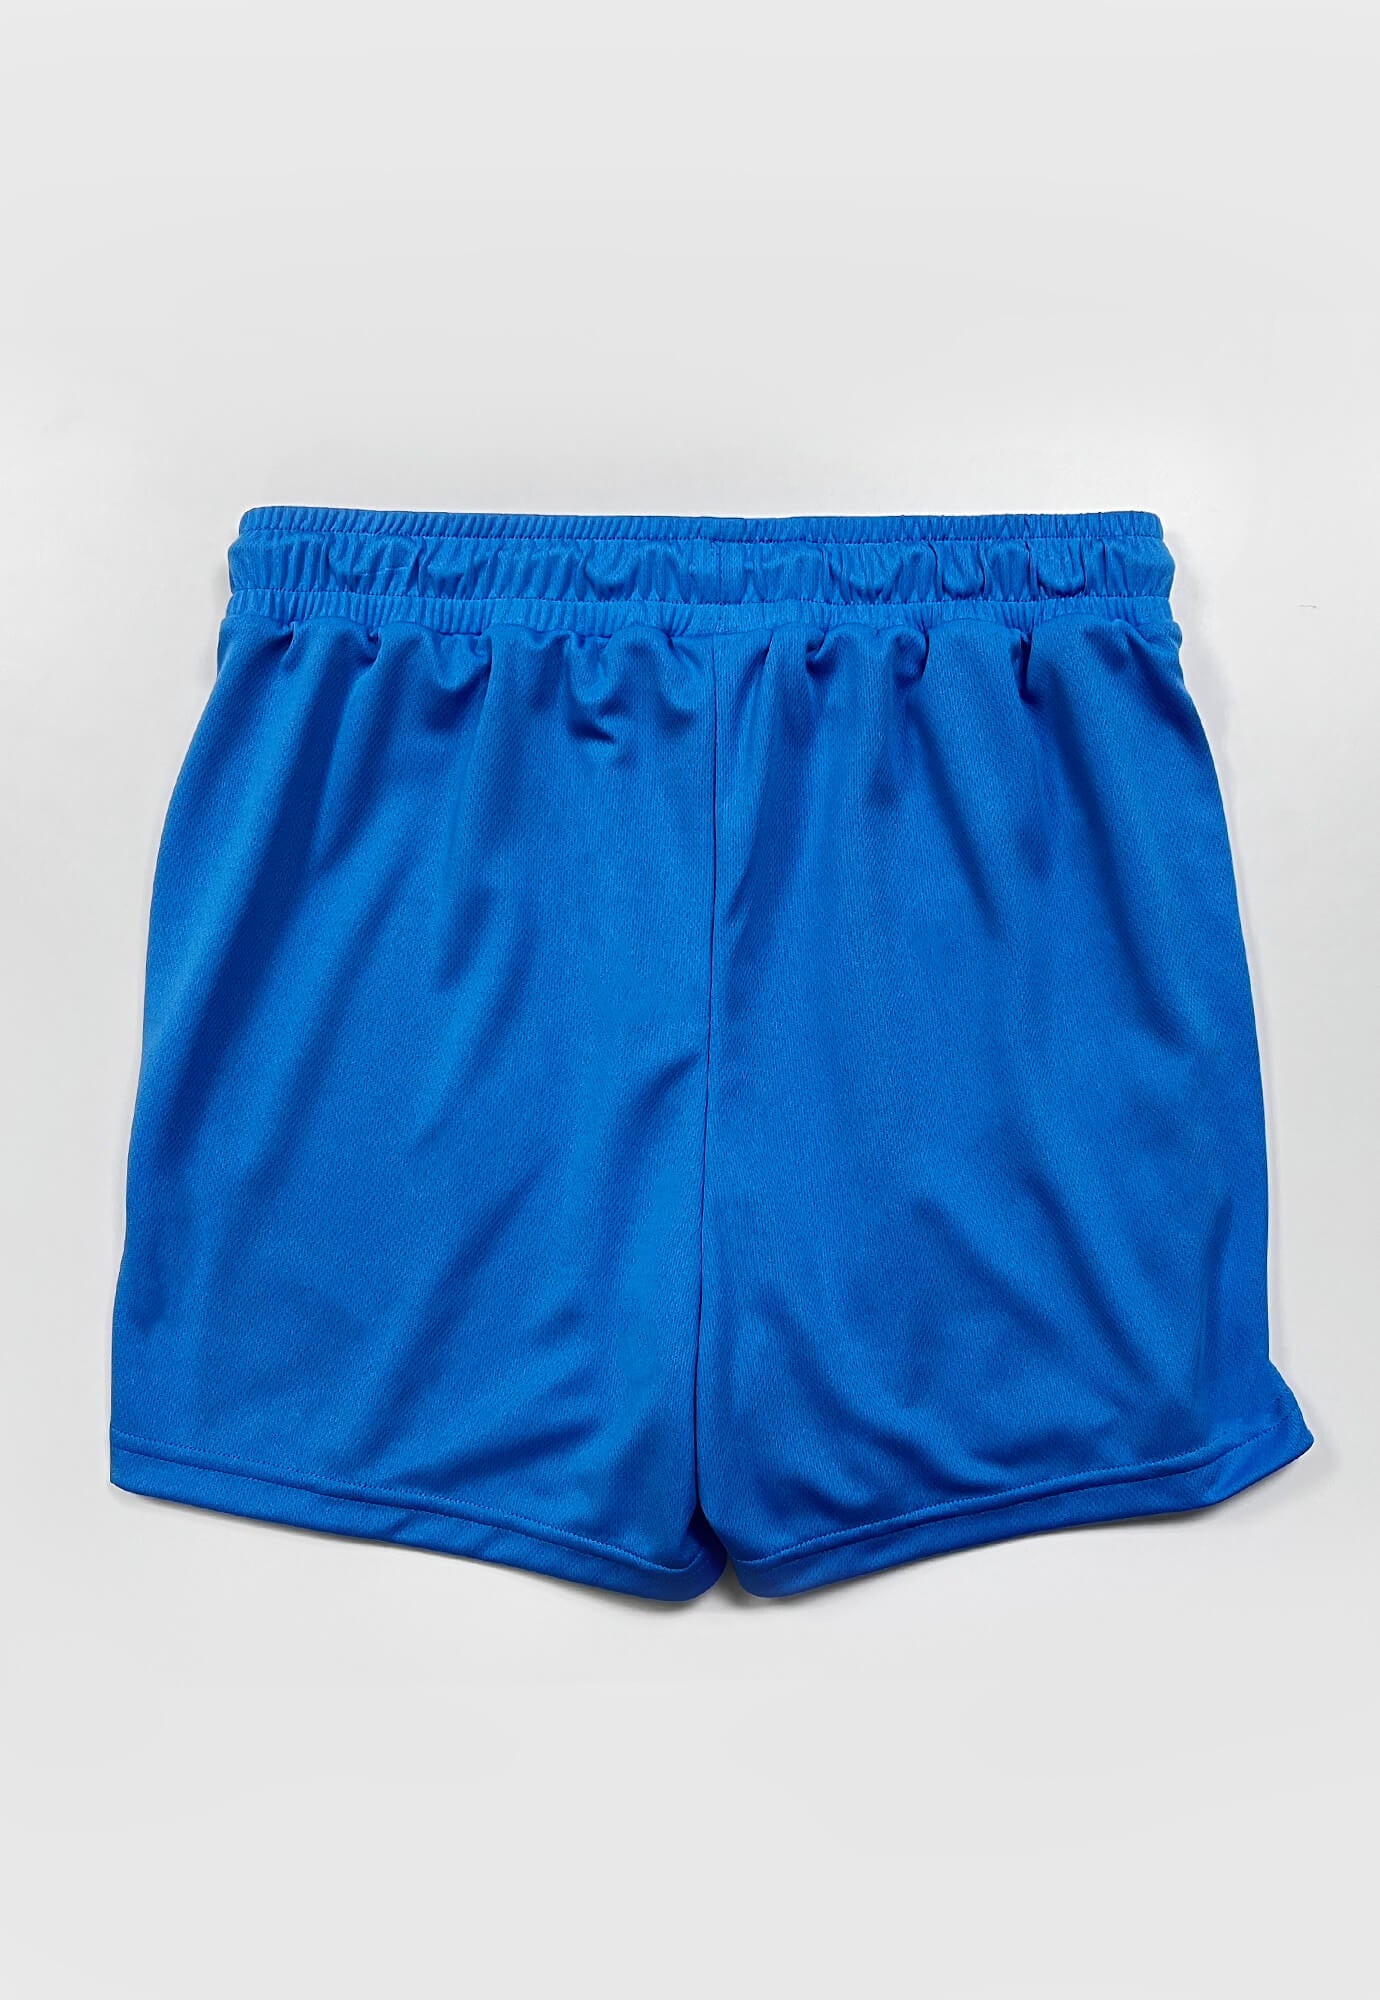 Short deportivo azul neon fondo entero, ciclista interno, cordón ajustable y bolsillos laterales para hombre